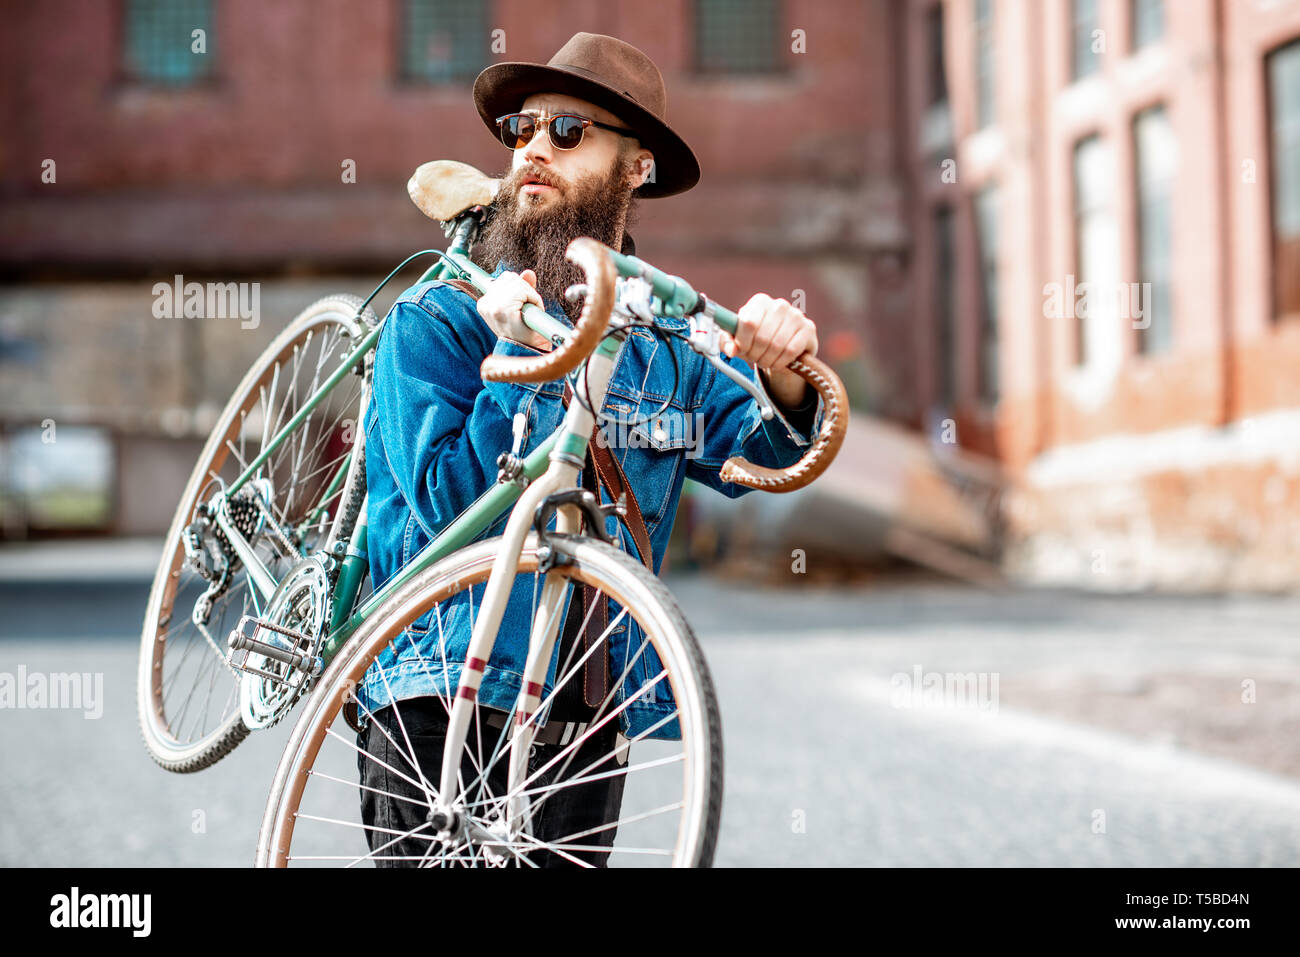 Retrato de un estilo HIPSTER barbudo vestida elegantemente con sombrero y chaqueta retro llevando su bicicleta en el contexto urbano Foto de stock